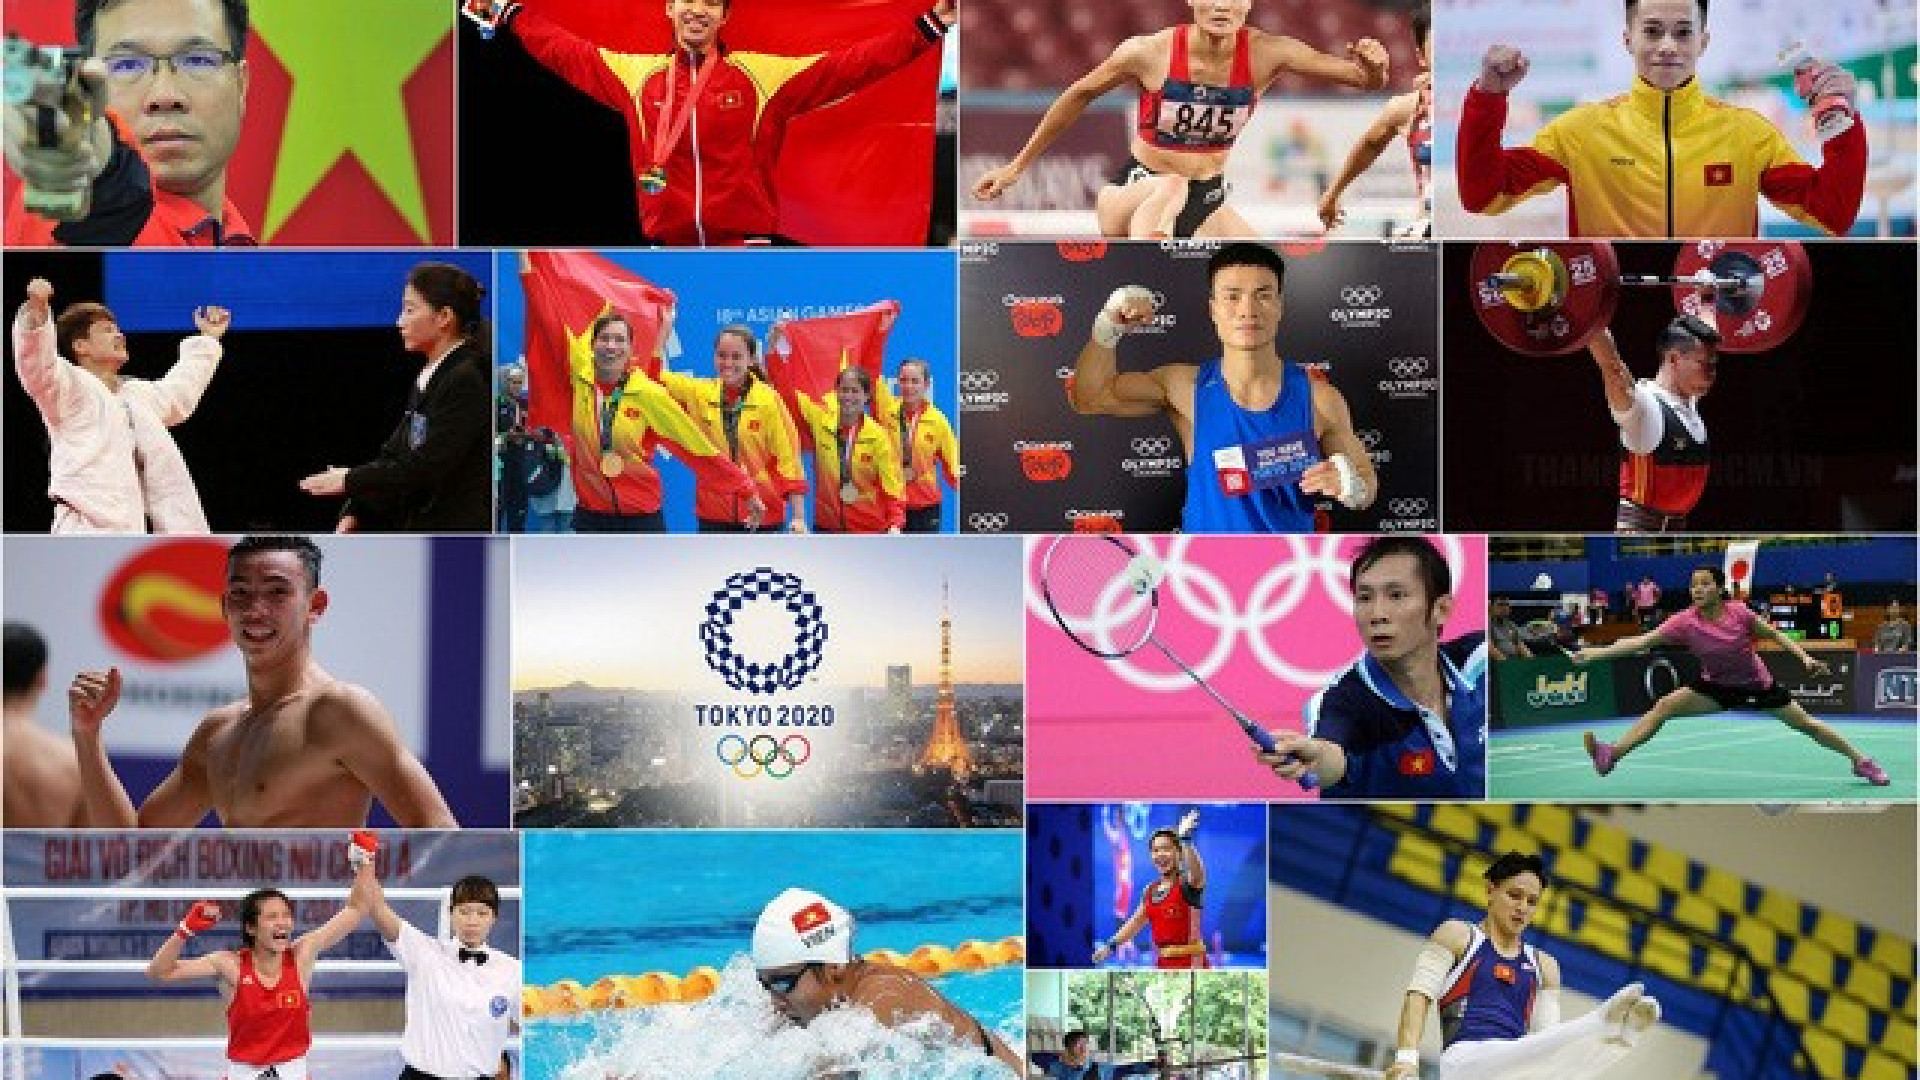 Đài Truyền hình Việt Nam đạt thoả thuận bản quyền phát sóng Thế vận hội Olympic Tokyo 2020